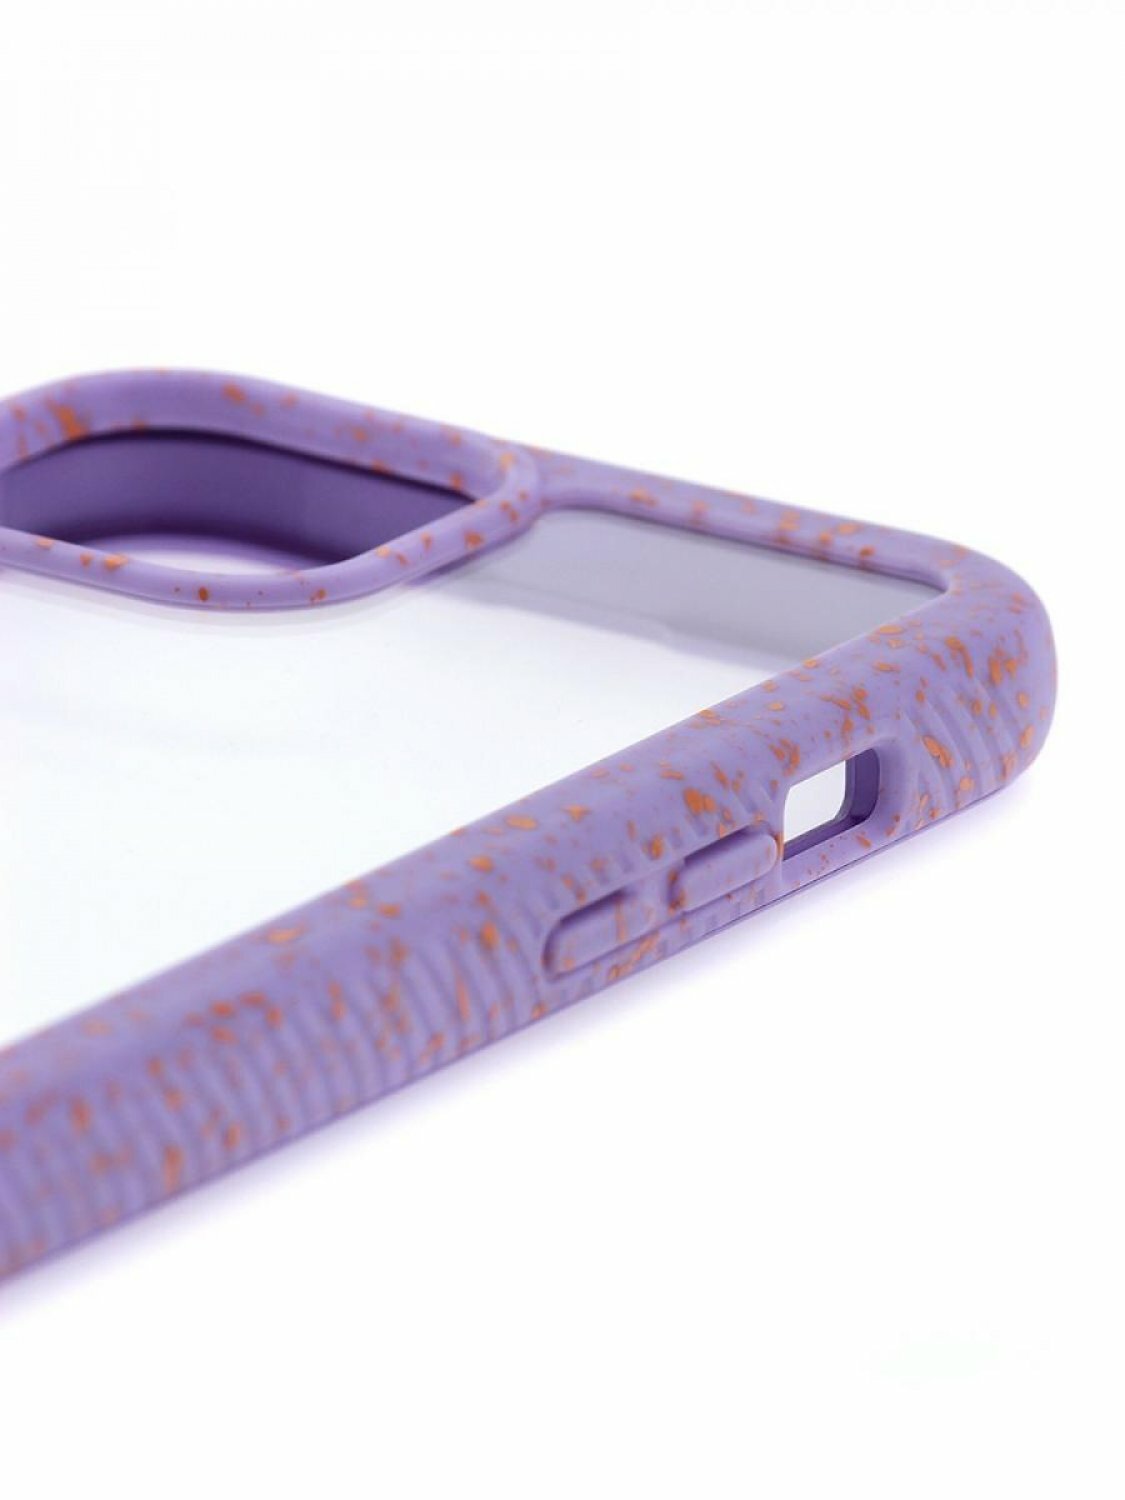 Чехол для iPhone 12 Pro Max Kruche Armor Splash Purple, противоударная накладка, защитный силиконовый бампер 360, прозрачный кейс, защита камеры